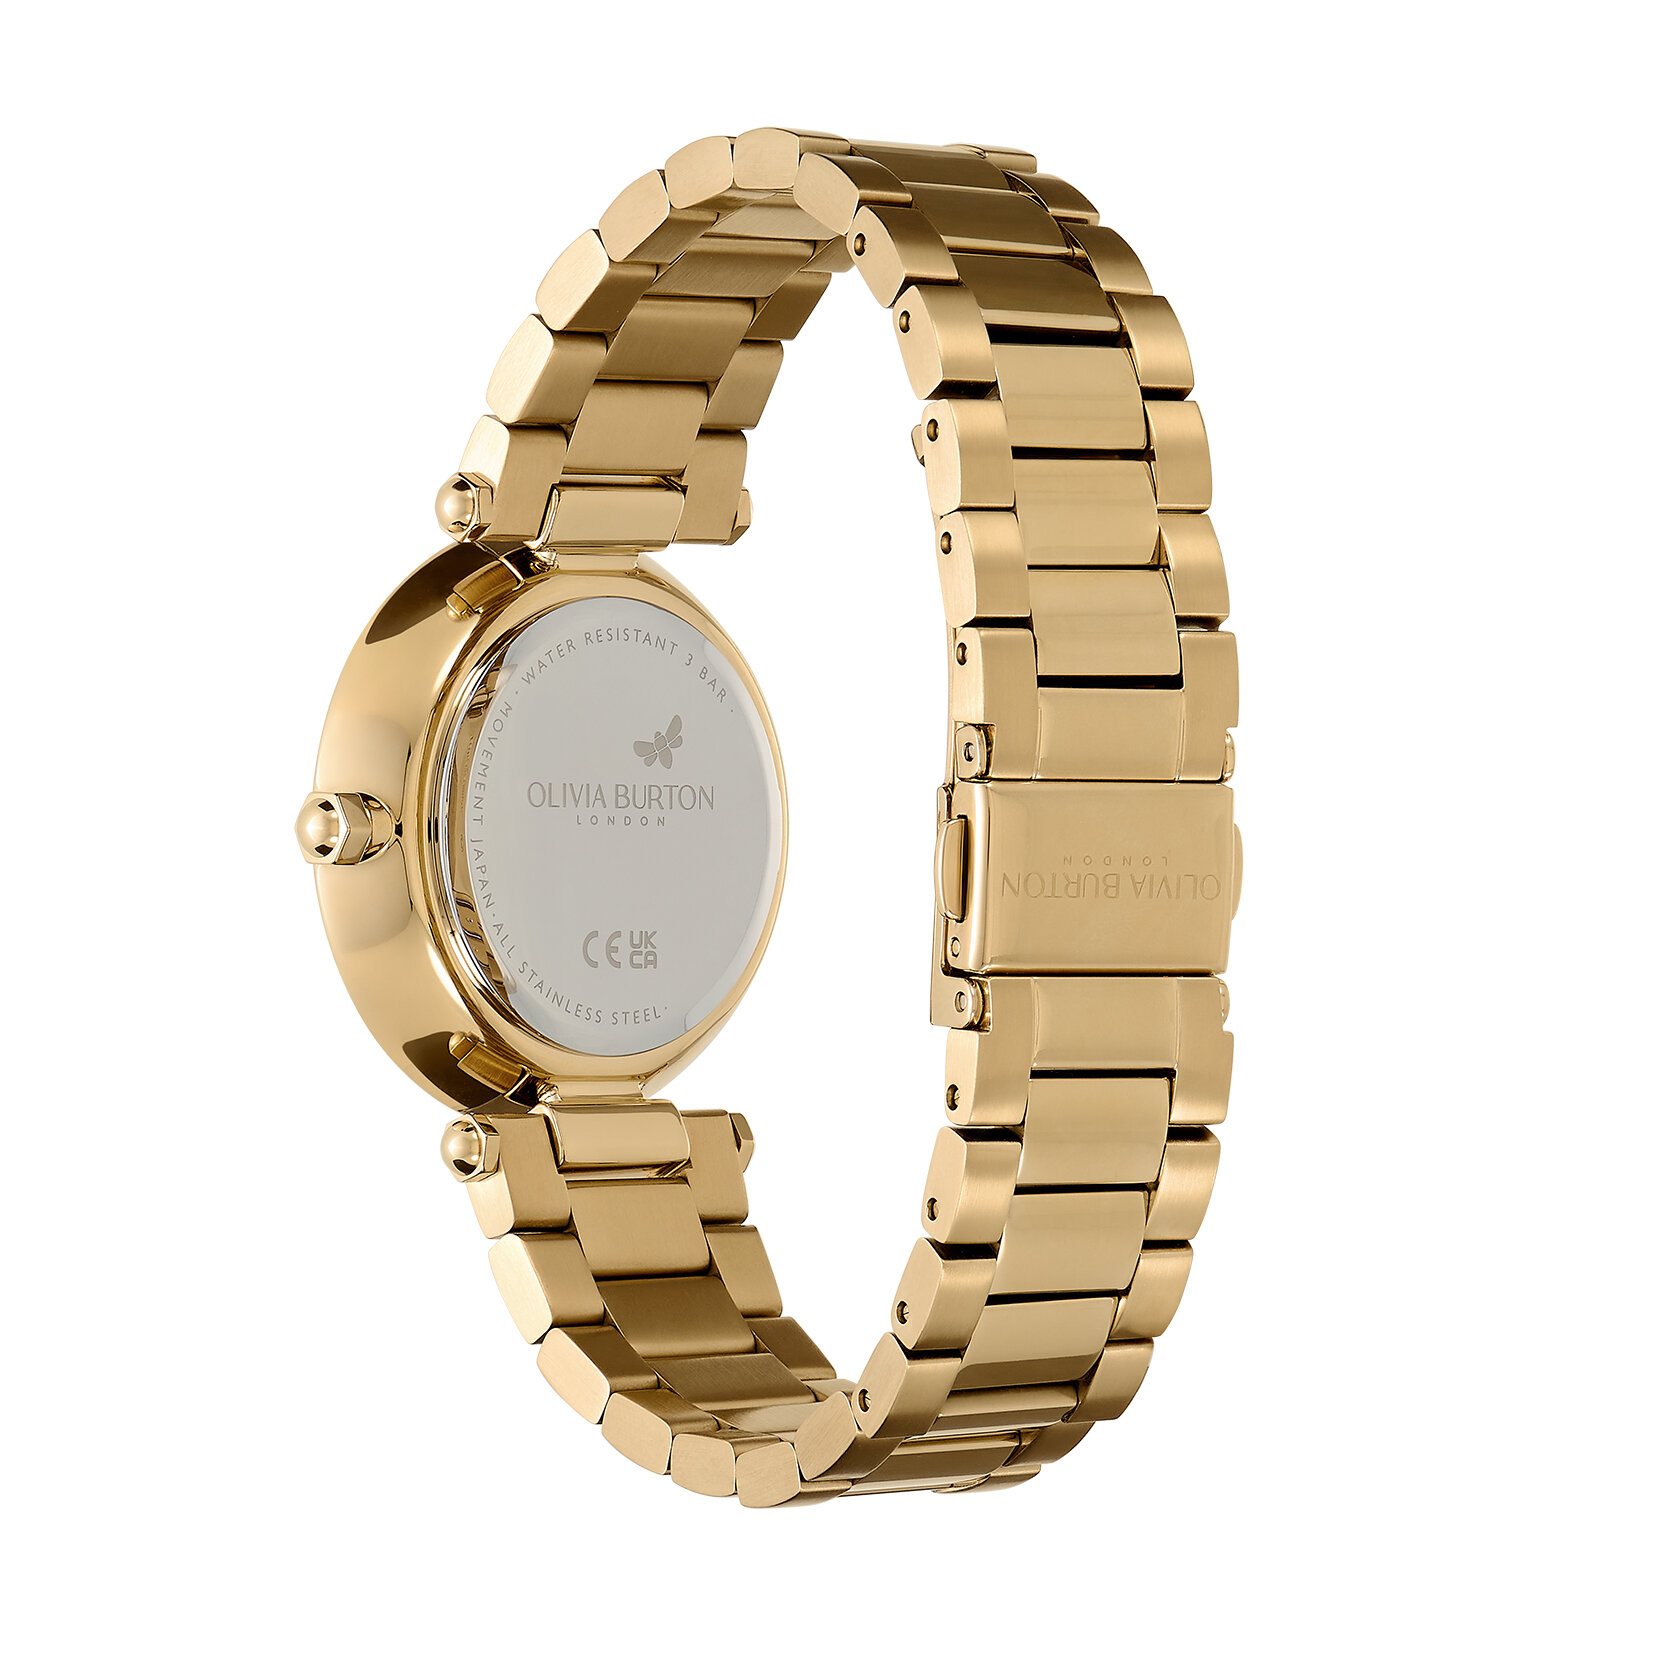 34mm Floral T-Bar Black & Gold Bracelet Watch